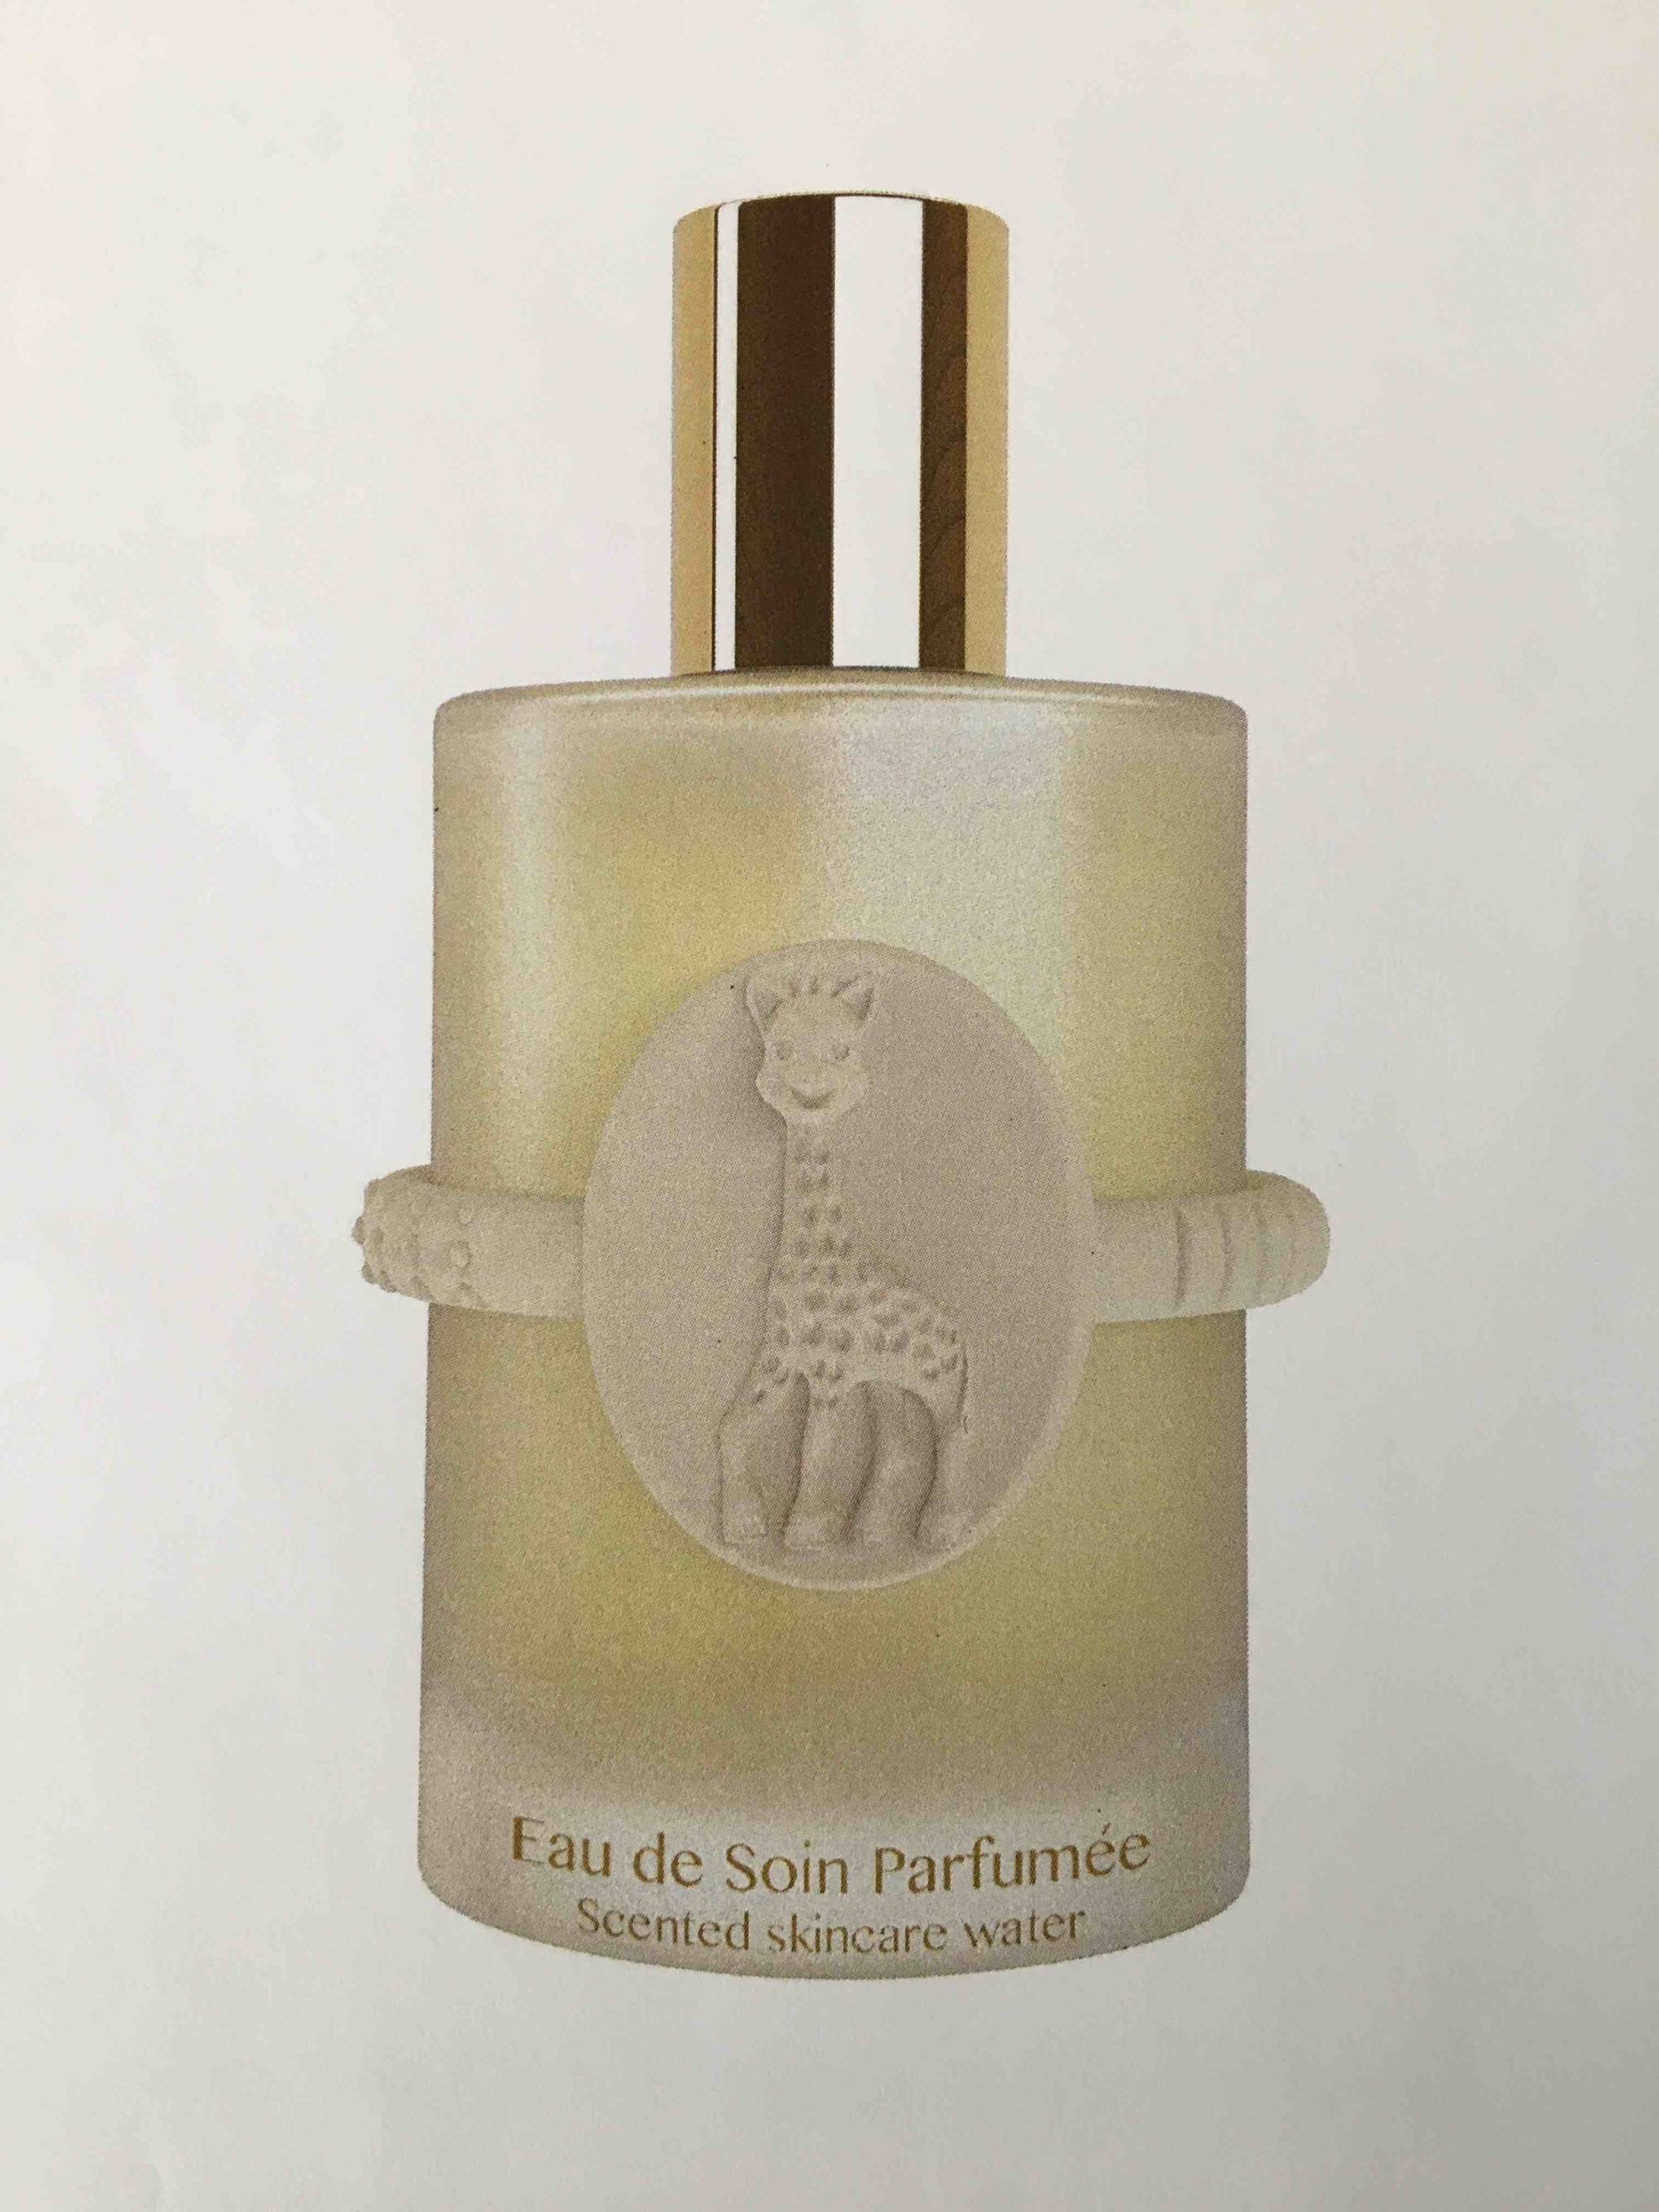 Coffret parfum bébé & Naissance  Compagnie Européenne des Parfums